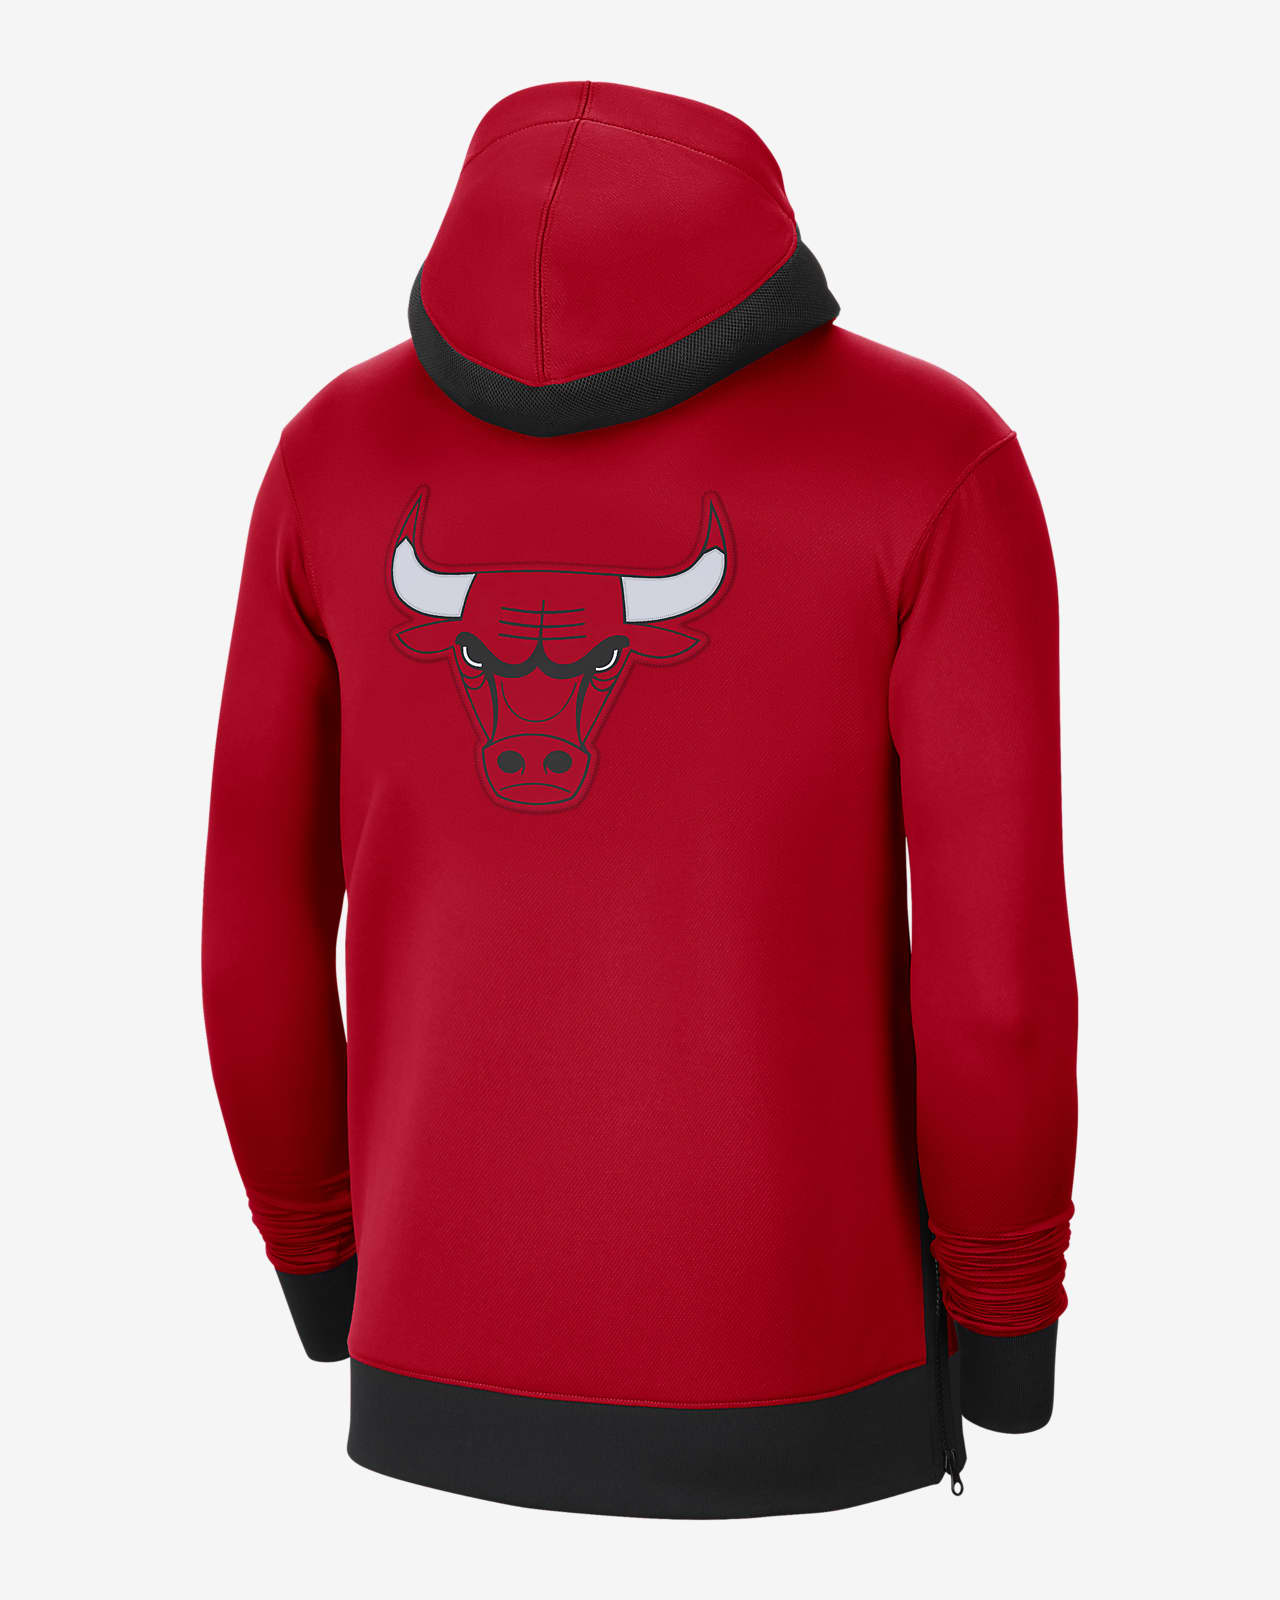 bulls hoodie nike